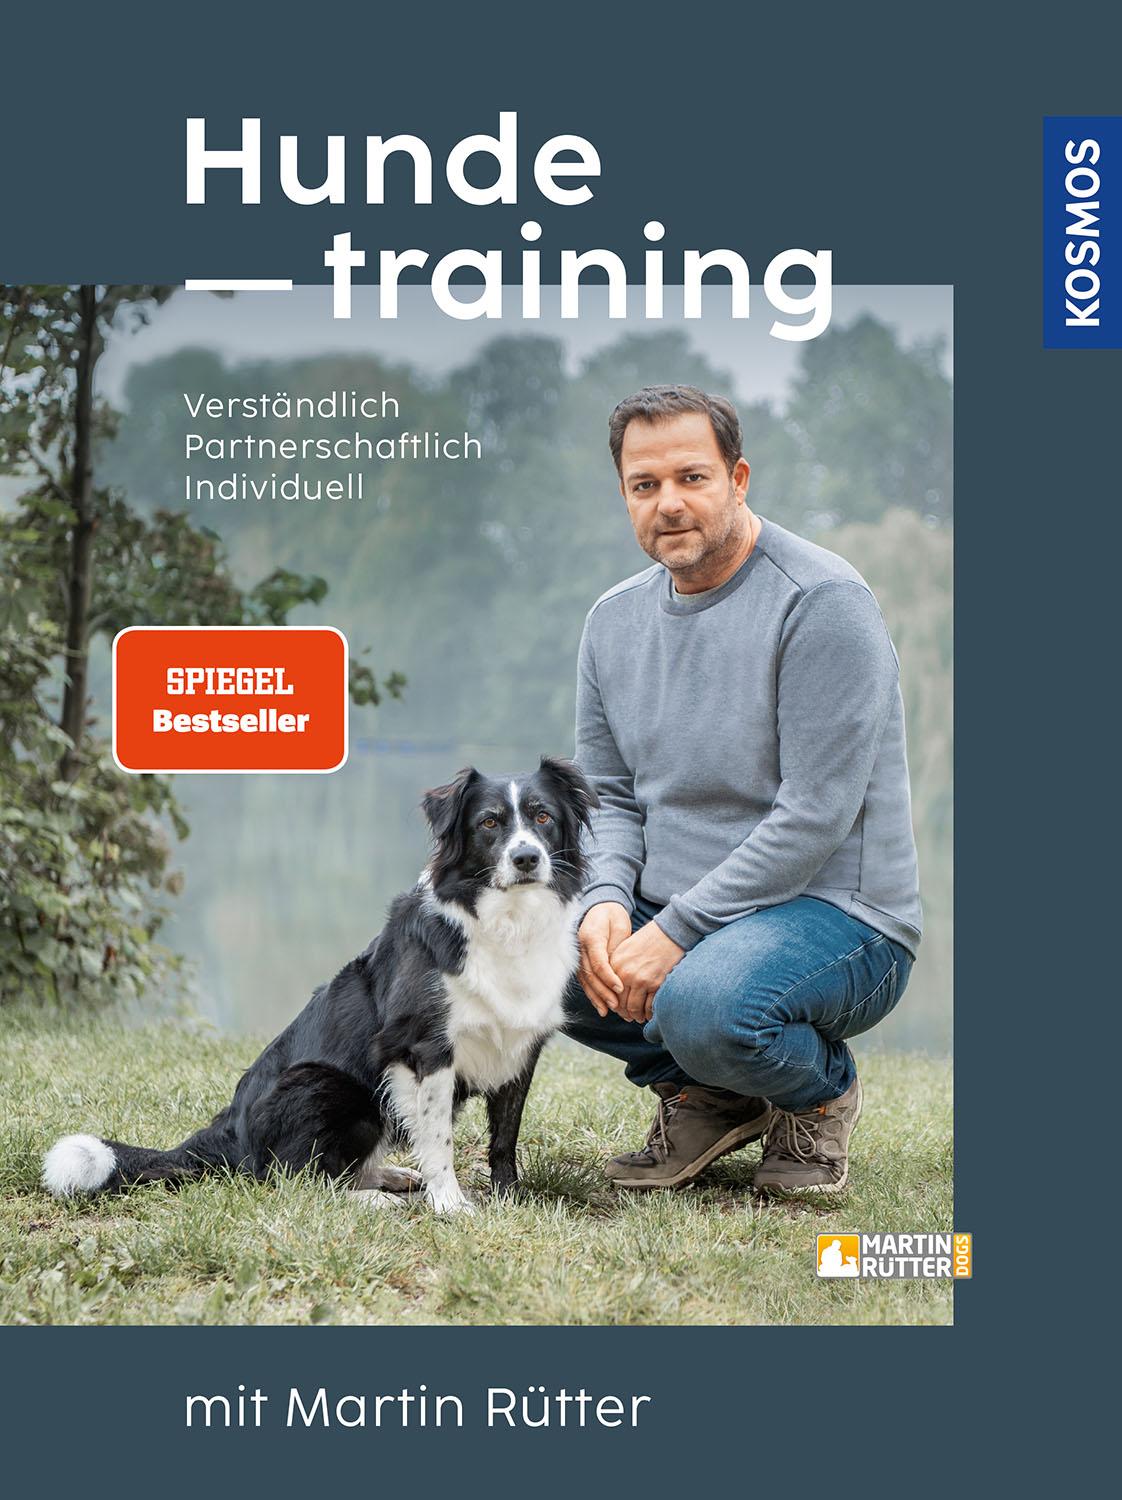 Hundetraining mit Martin Rütter verständlich, partnerschaftlich, individuell